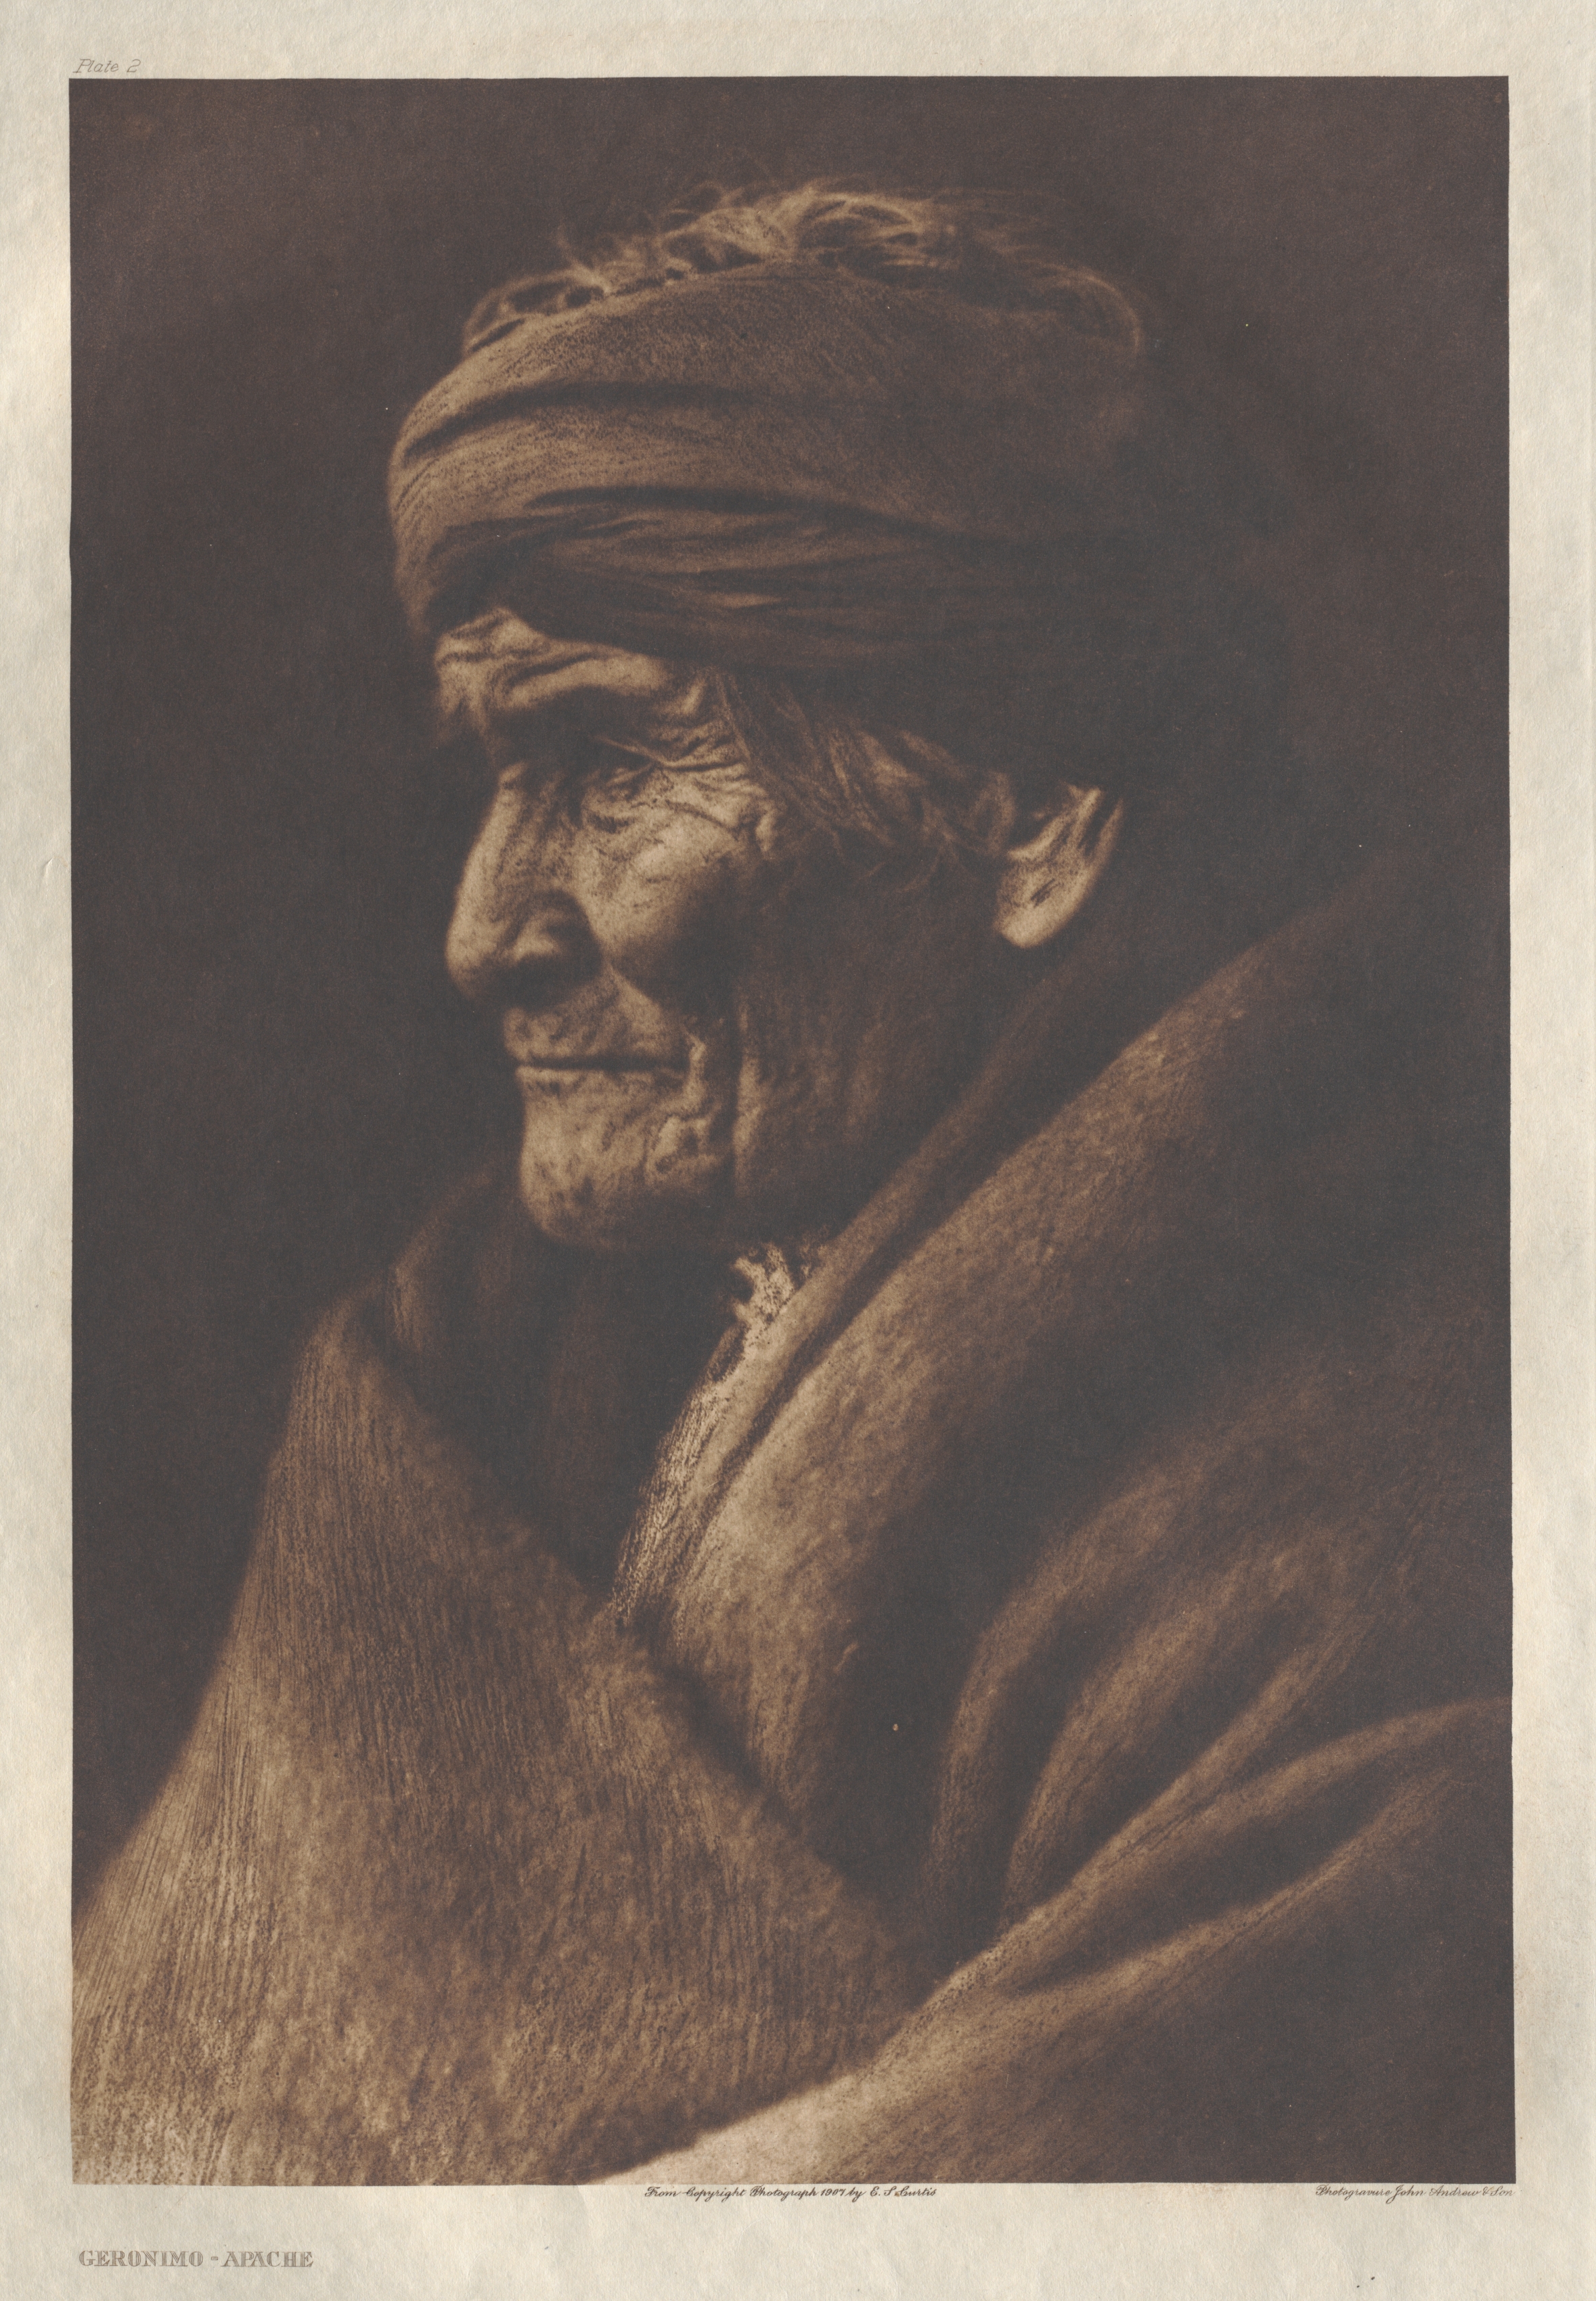 Portfolio I, Plate 2: Geronimo-Apache